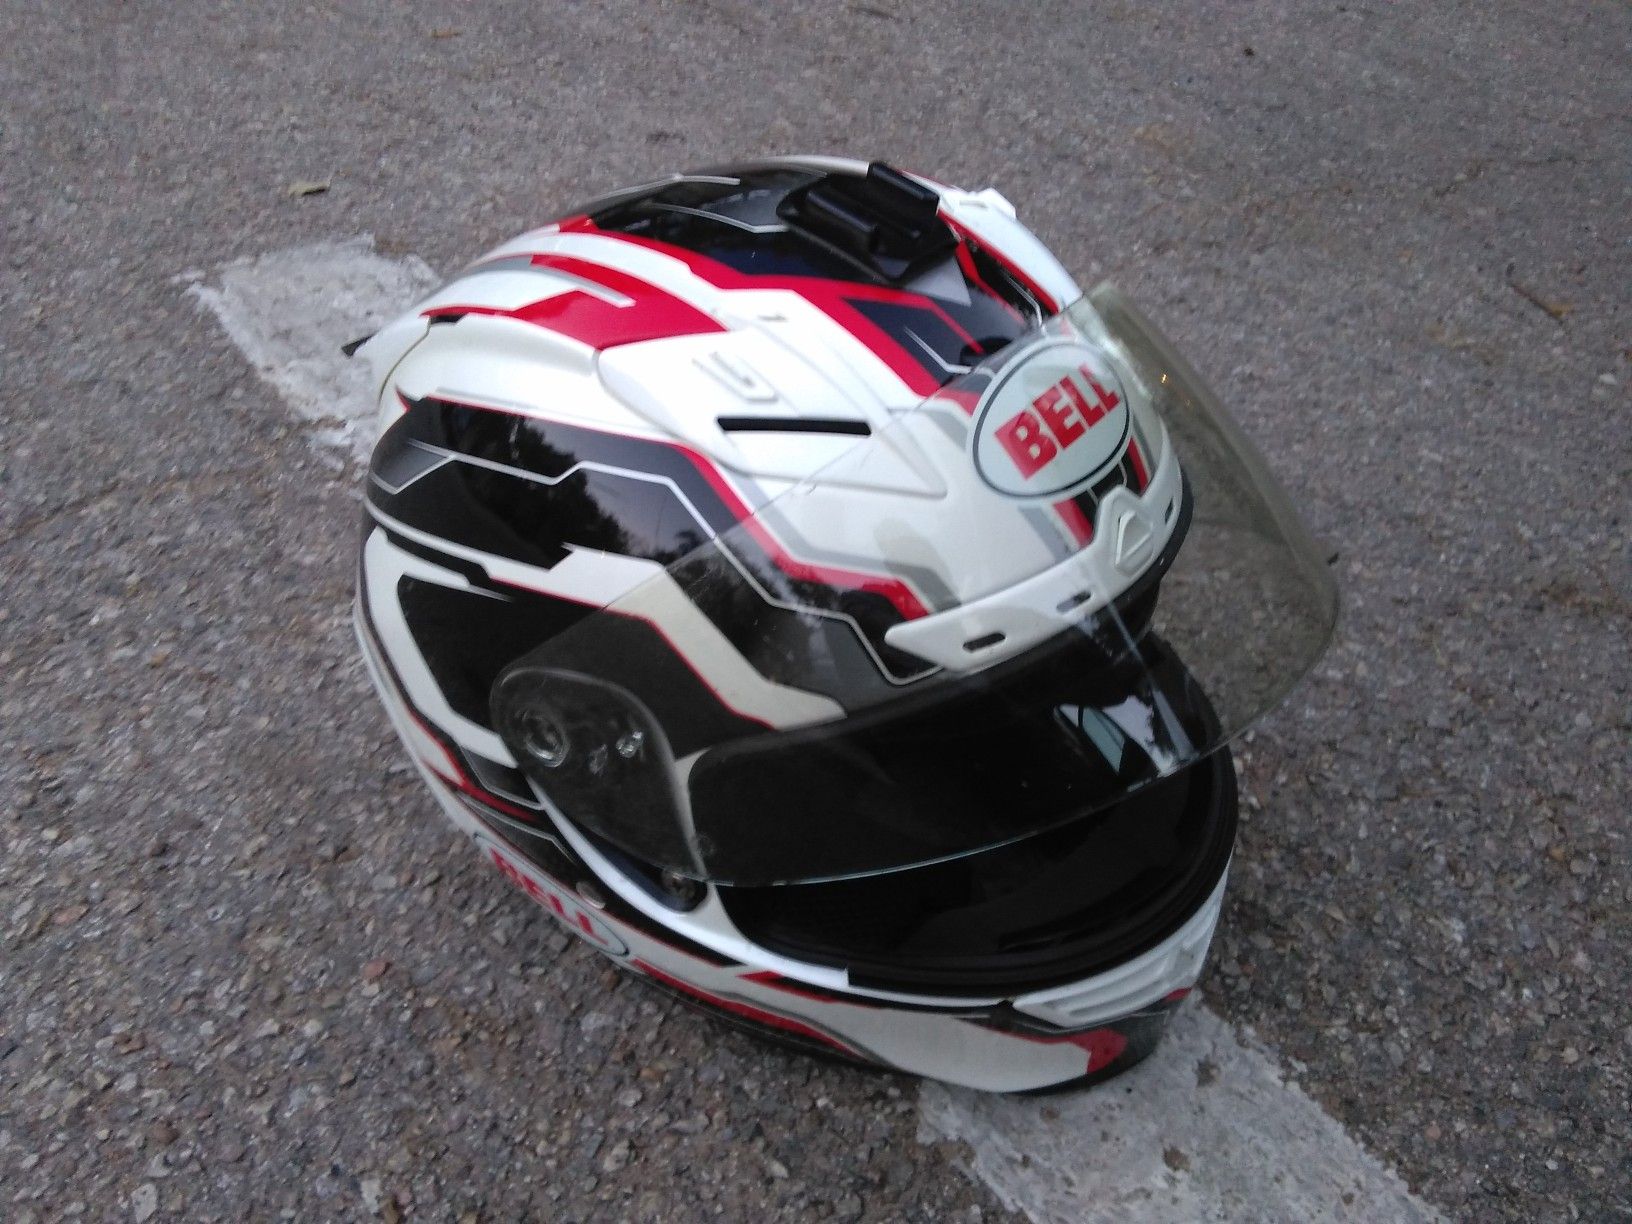 Bell motorcycle helmet size 7 Snell certified